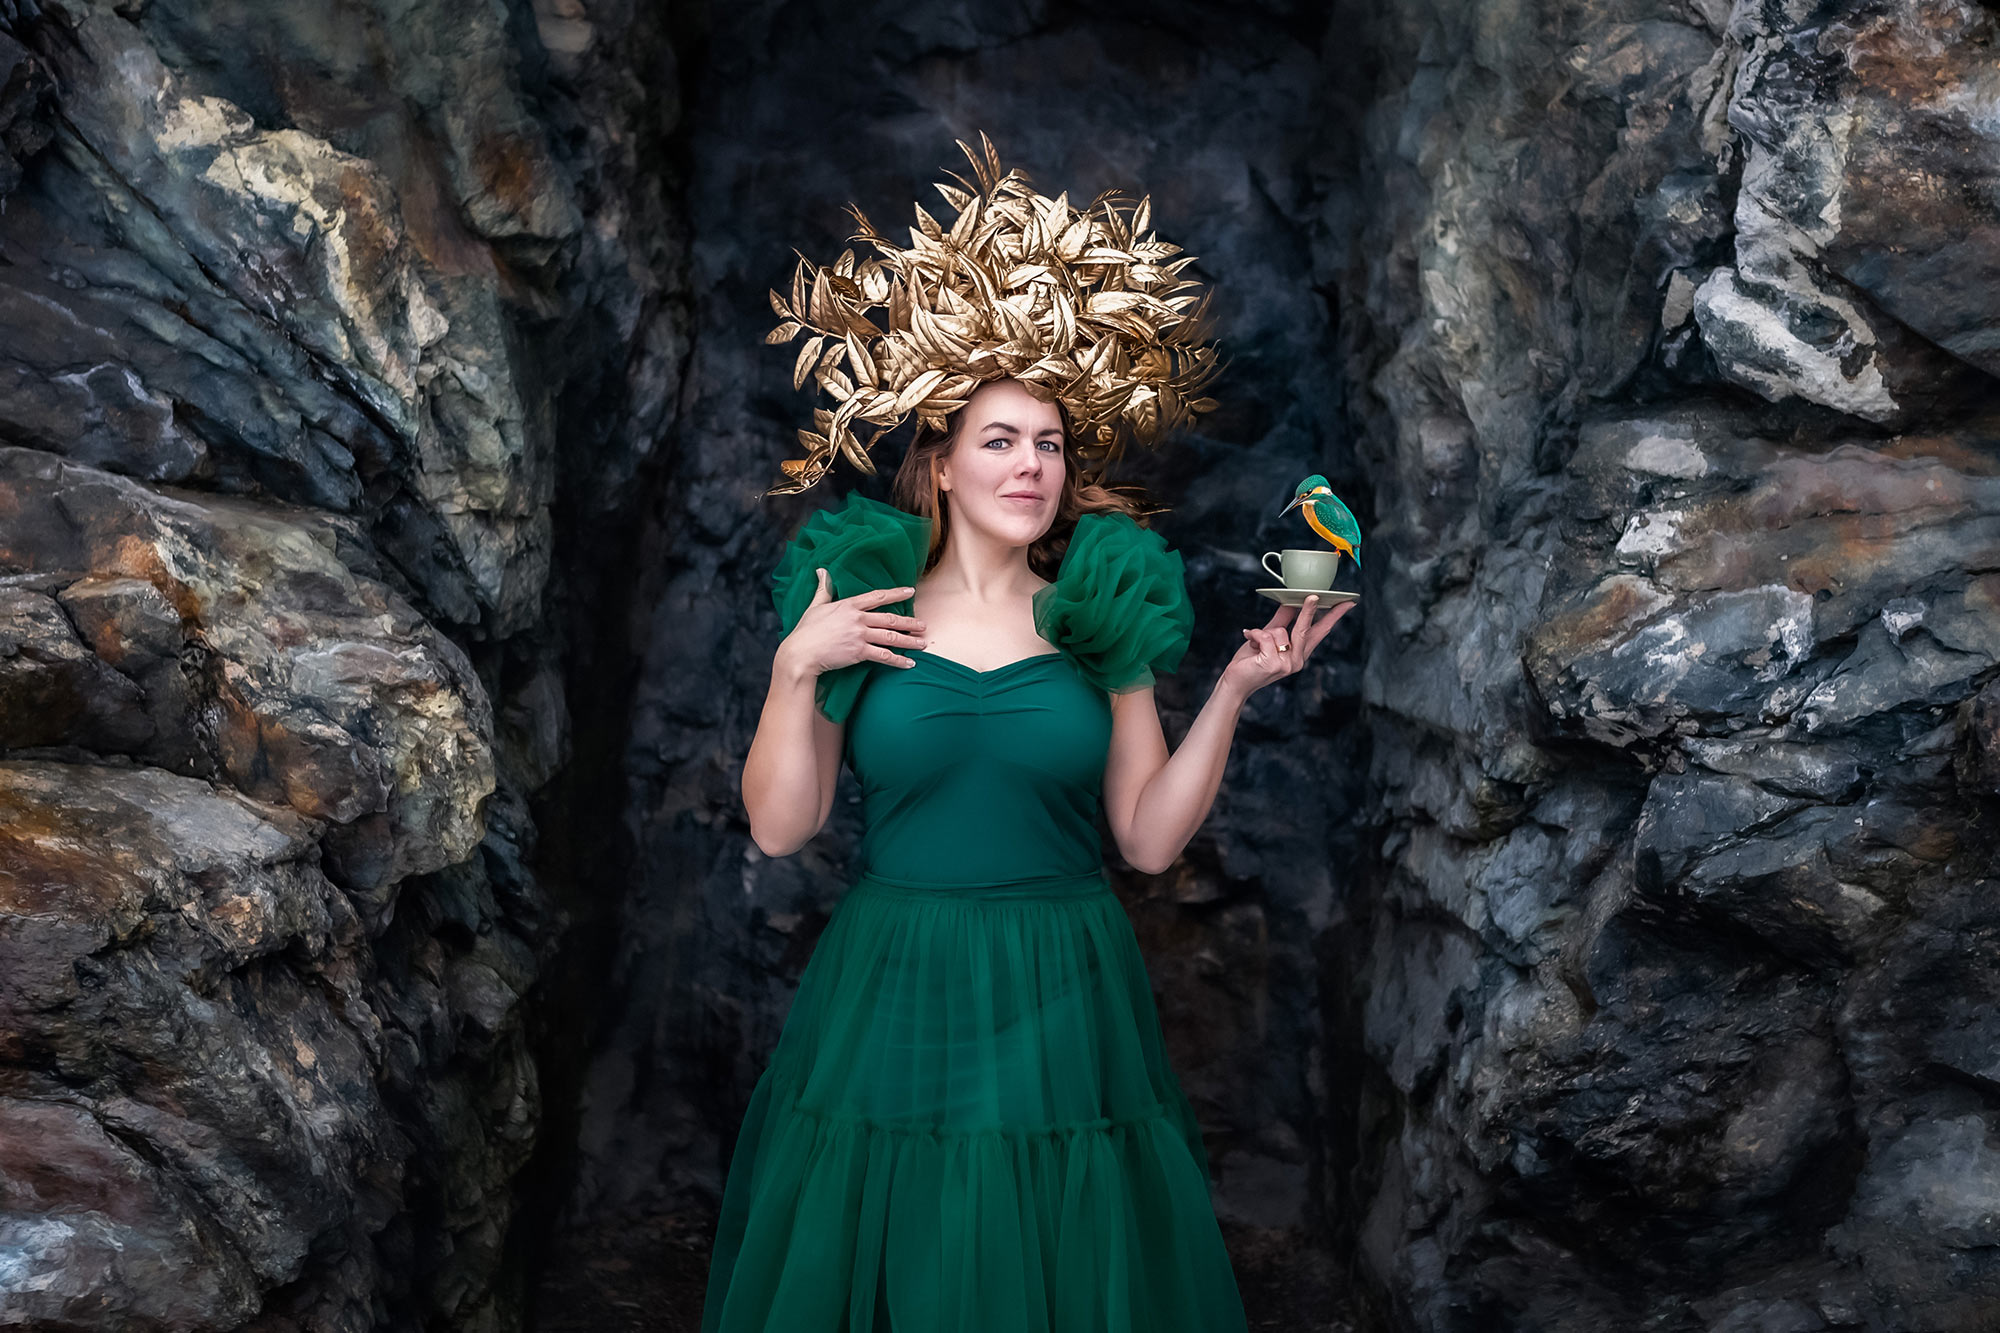 En kvinna i grön klänning och med en gyllene bladkrona på huvudet står i en klippöppning. Kvinnan håller en grön tekopp och på den sitter en liten grön och orange fågel.